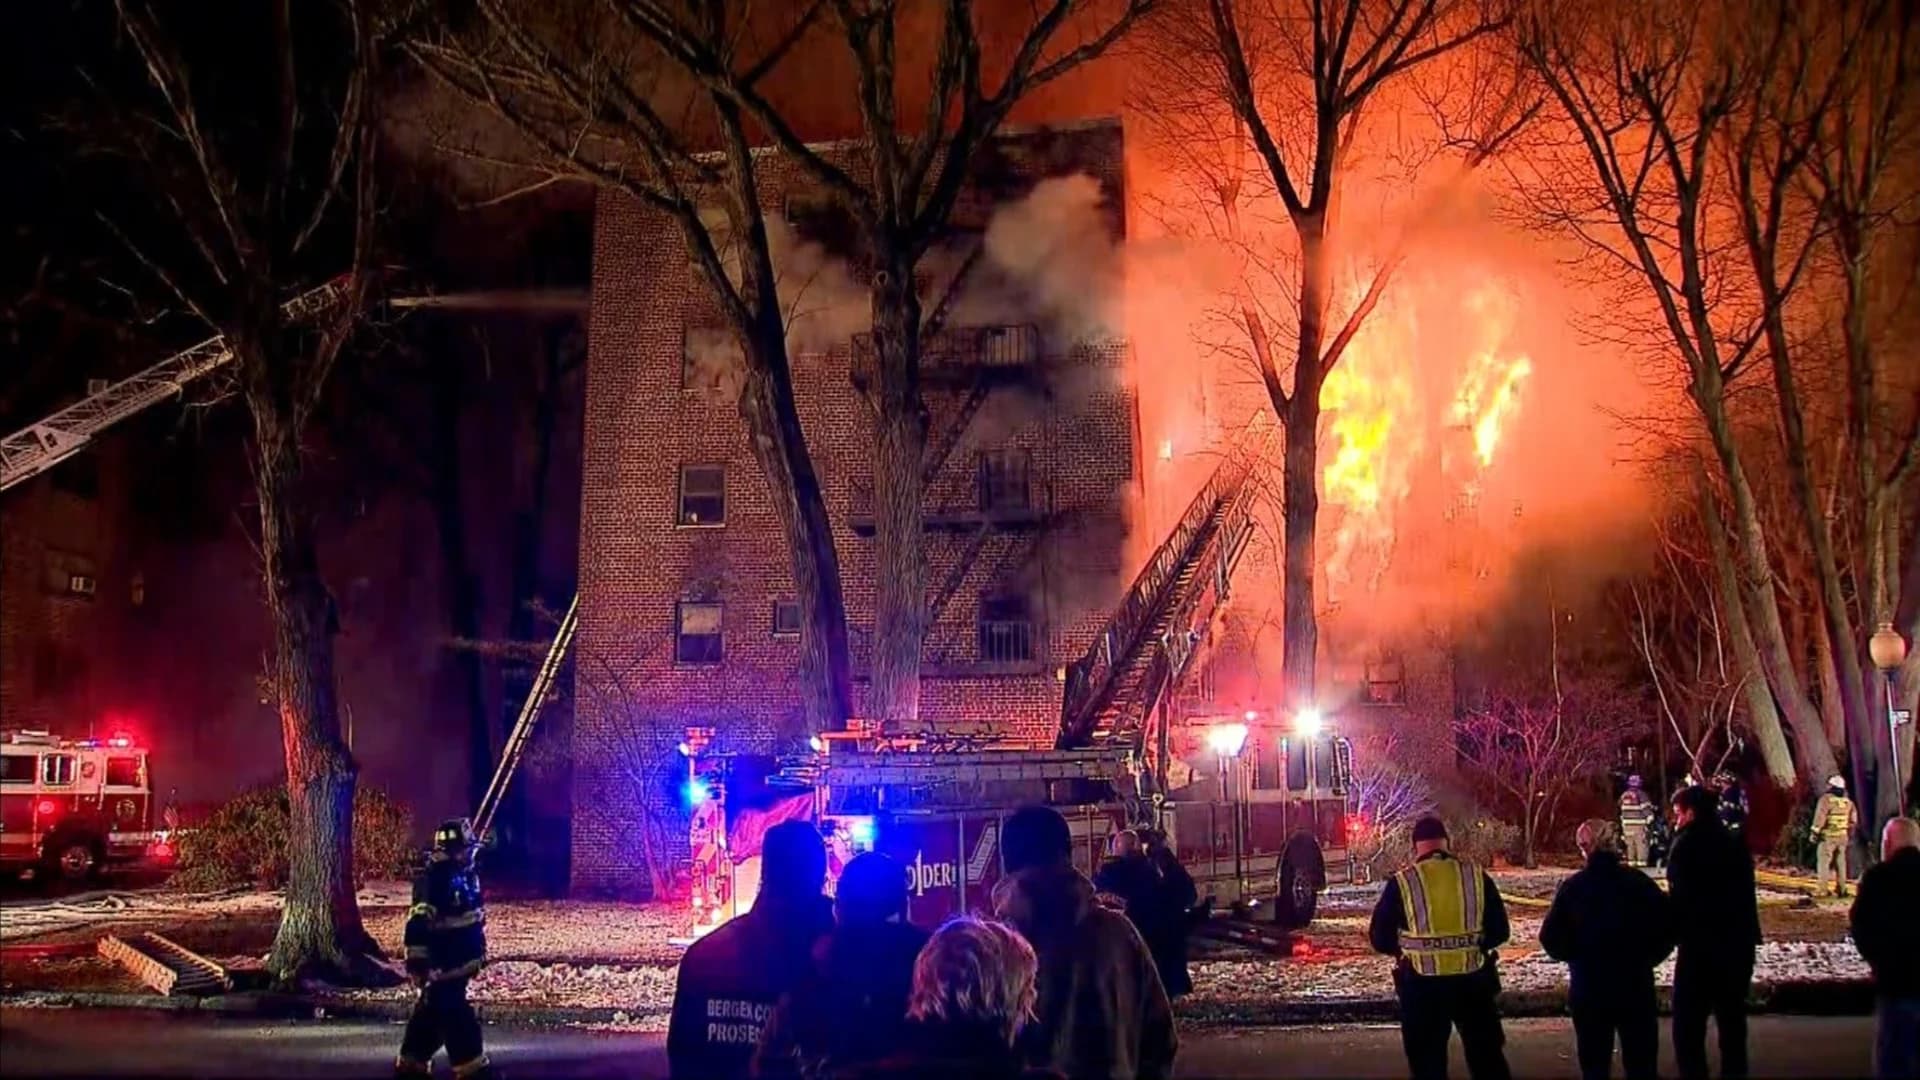 PHOTOS: Large fire destroys Fort Lee apartment building